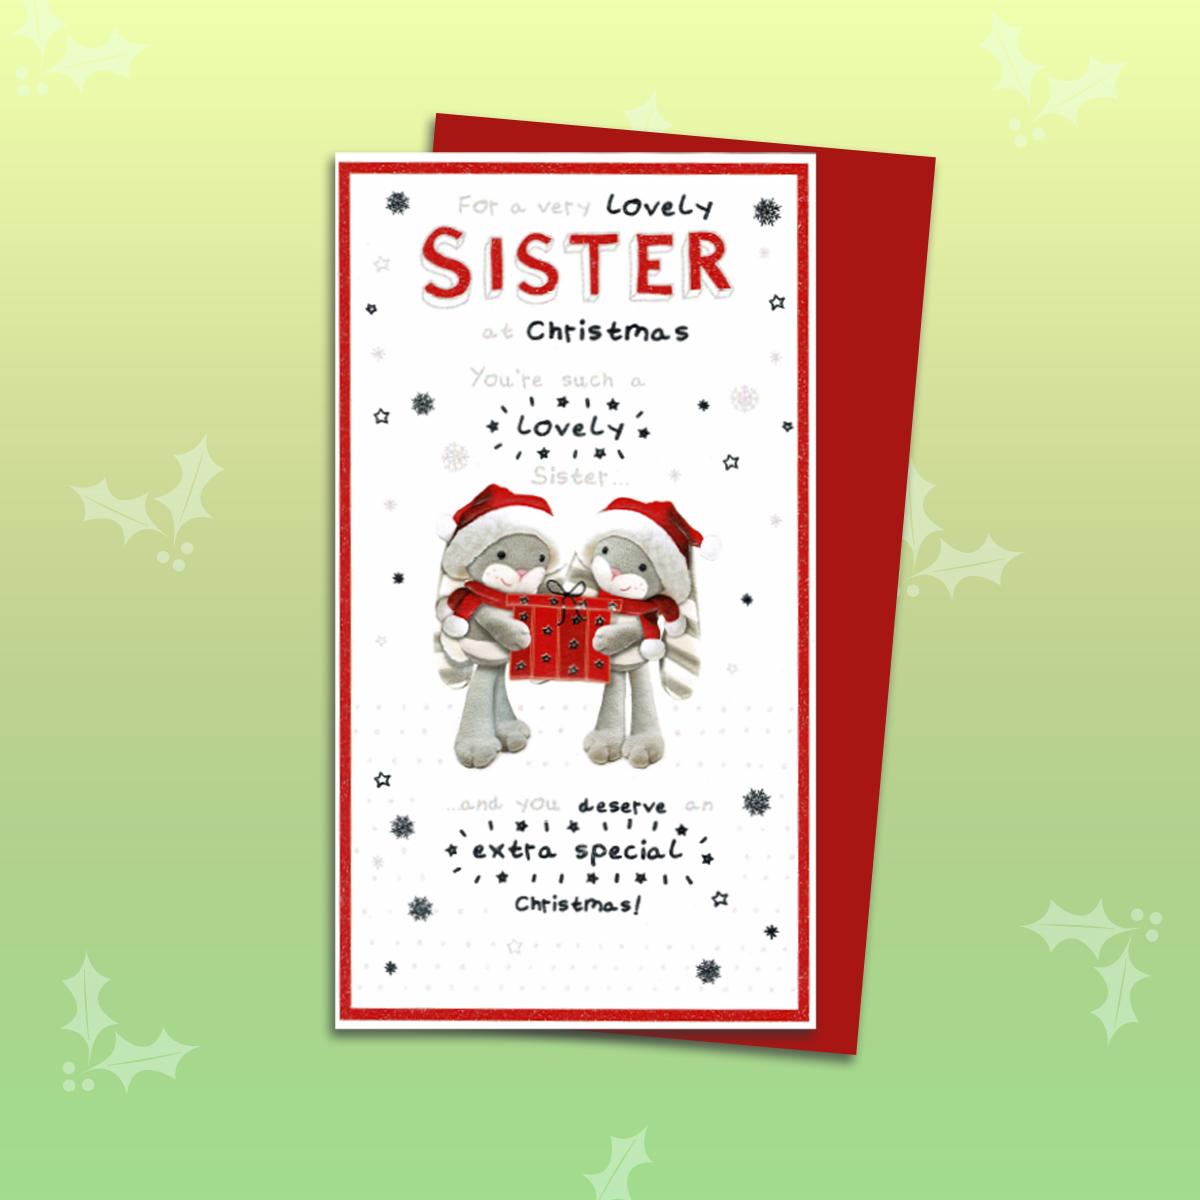 Lovely Sister Christmas Card Alongside Its Red Envelope